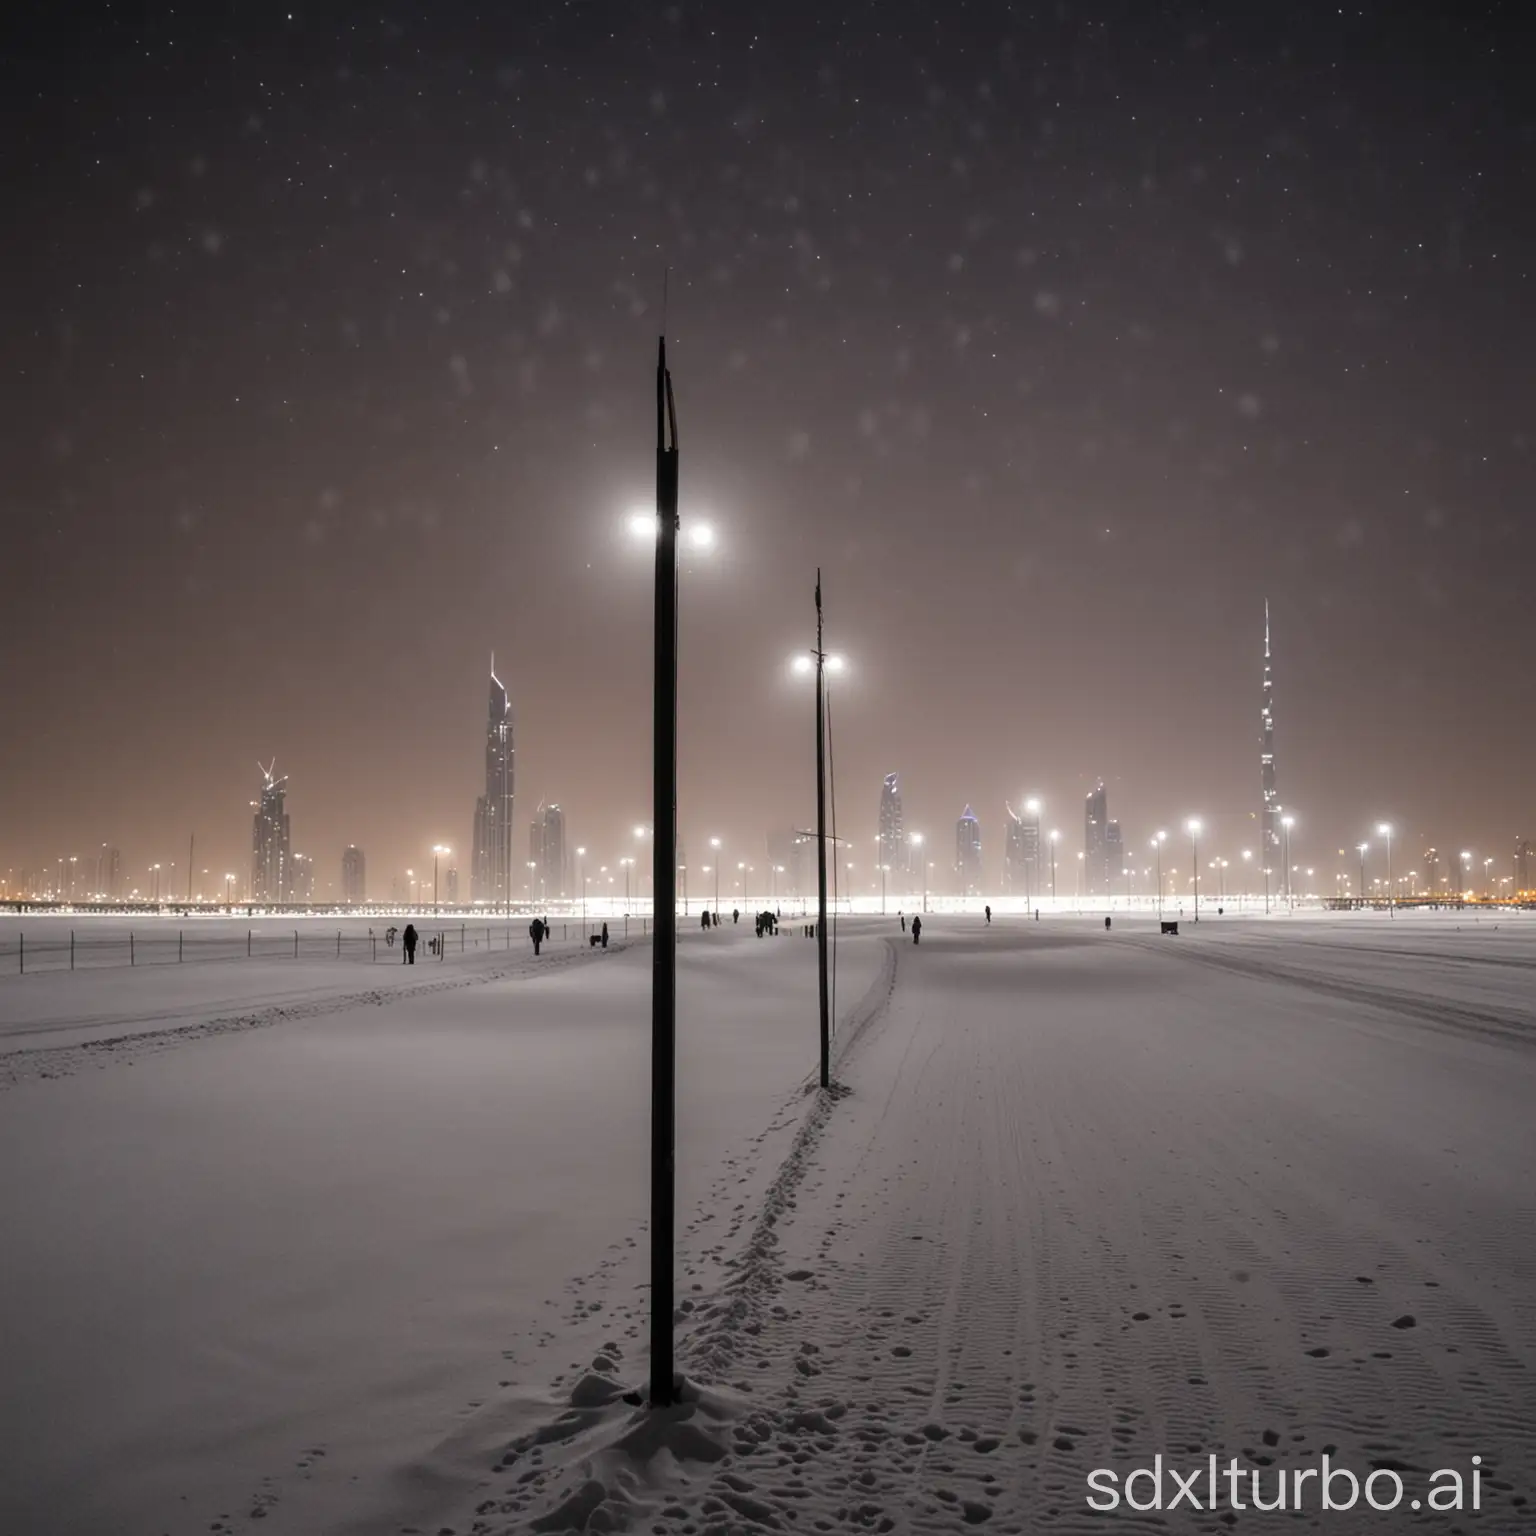 Dubai beleuchtet bei Nacht mit meterhohem Schnee